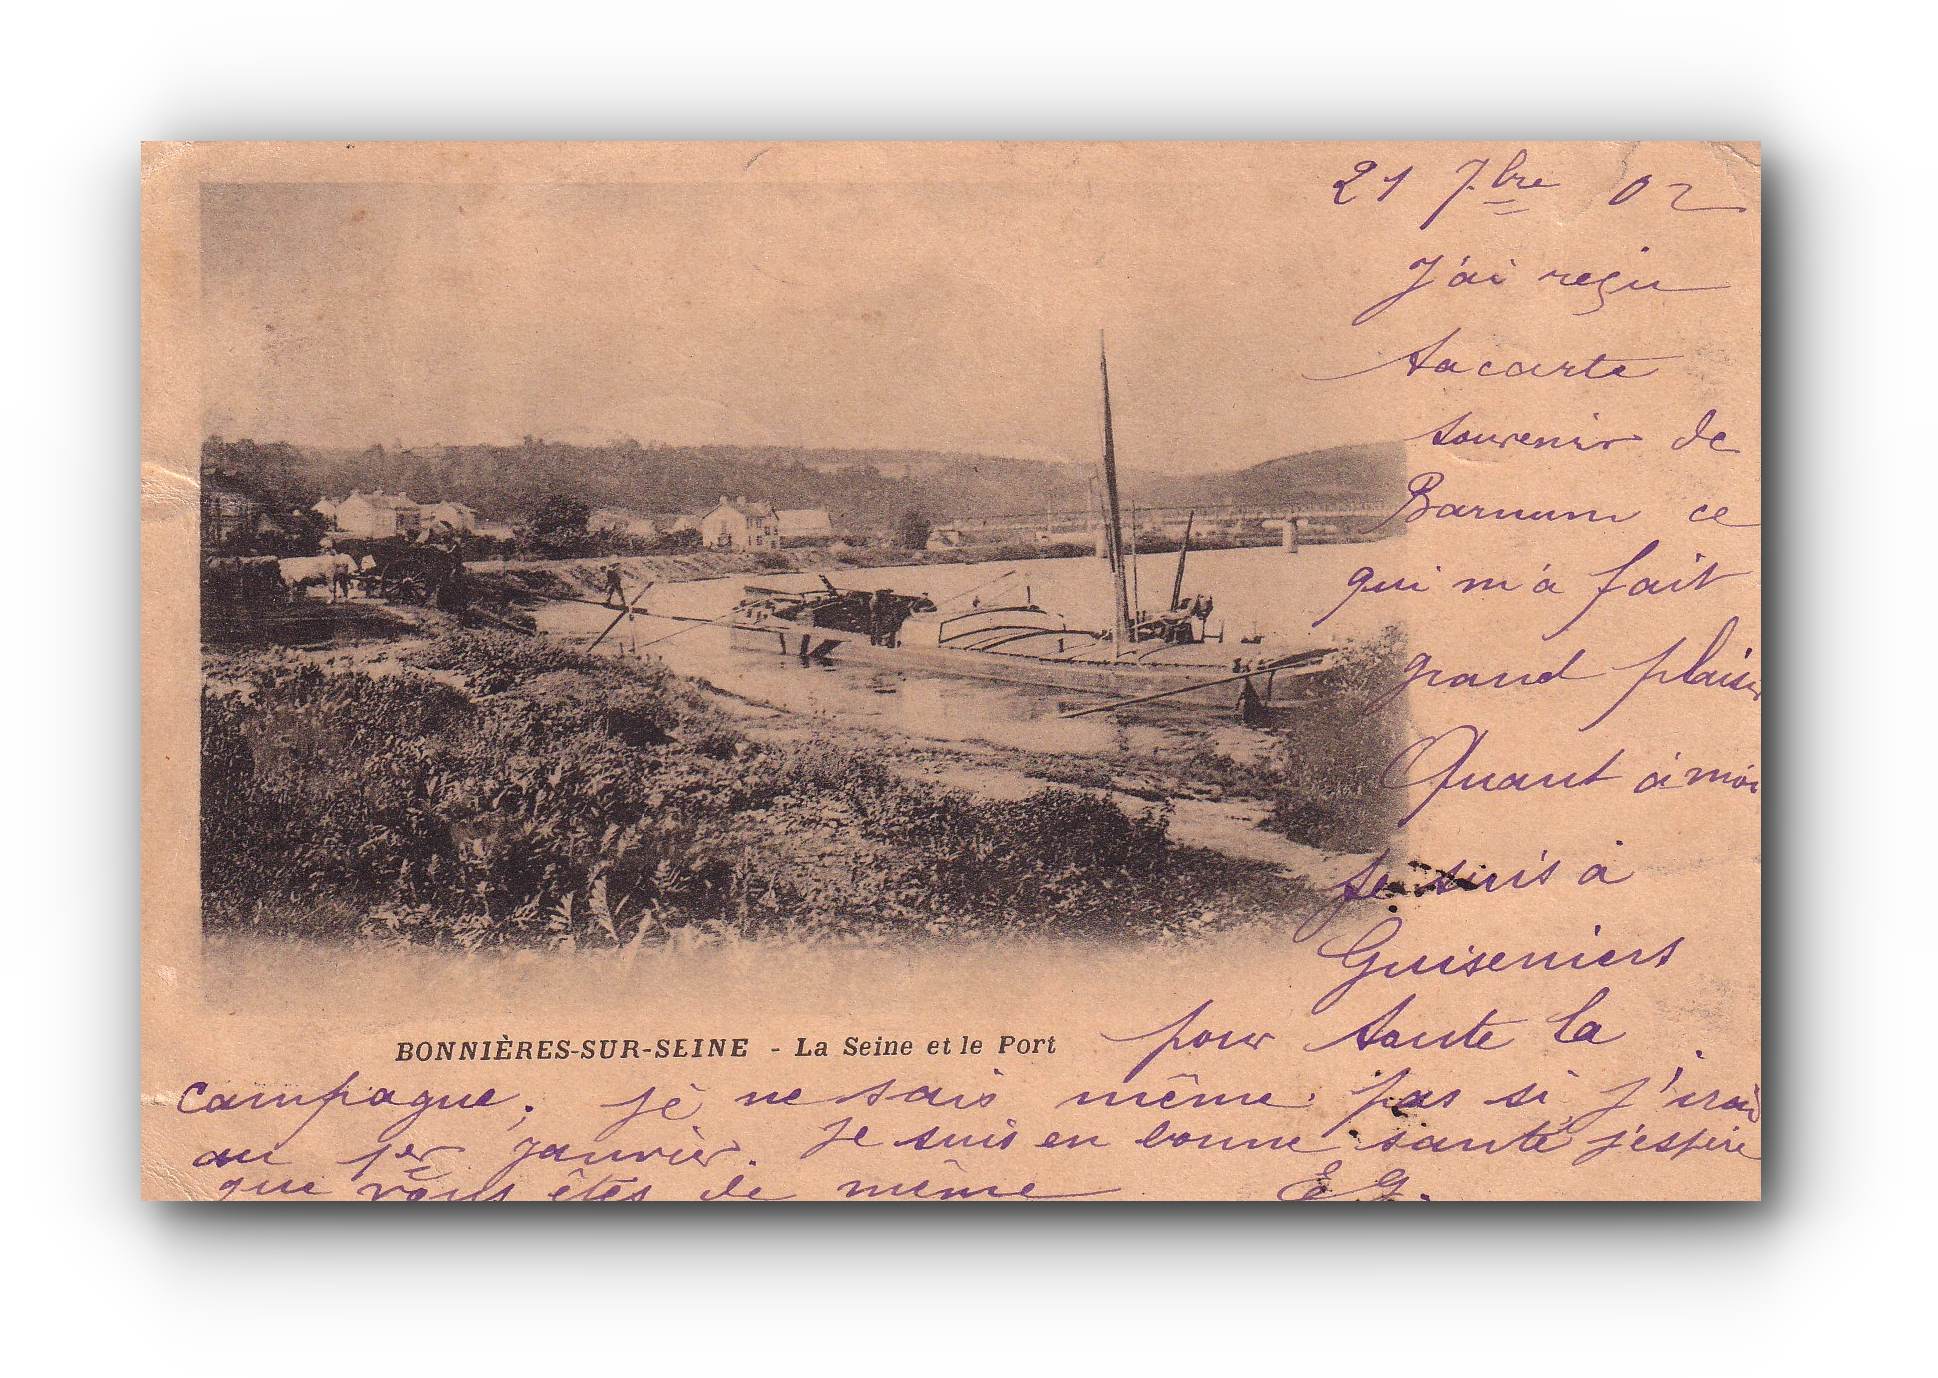 BONNIÈRES - SUR - SEINE - La Seine et le Port - 21.09.1902